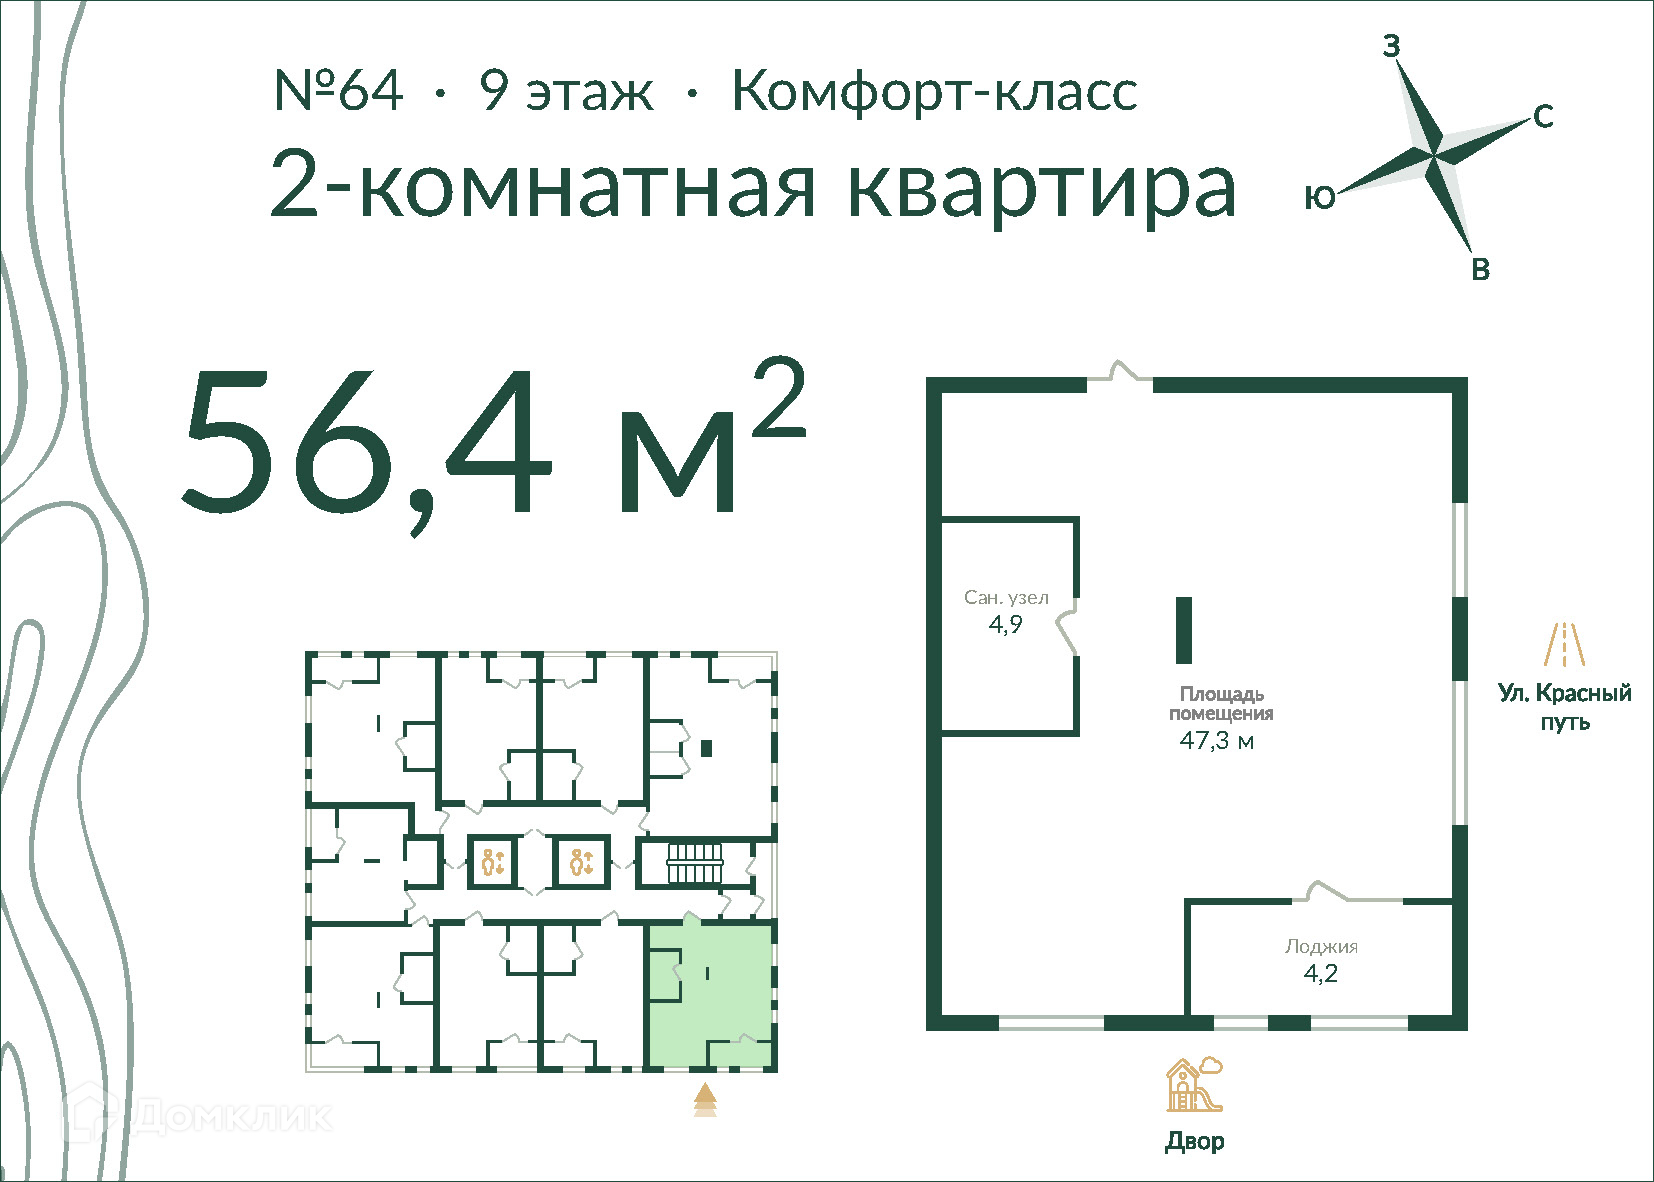 2-комнатная квартира 56м2 ЖК Экопарк